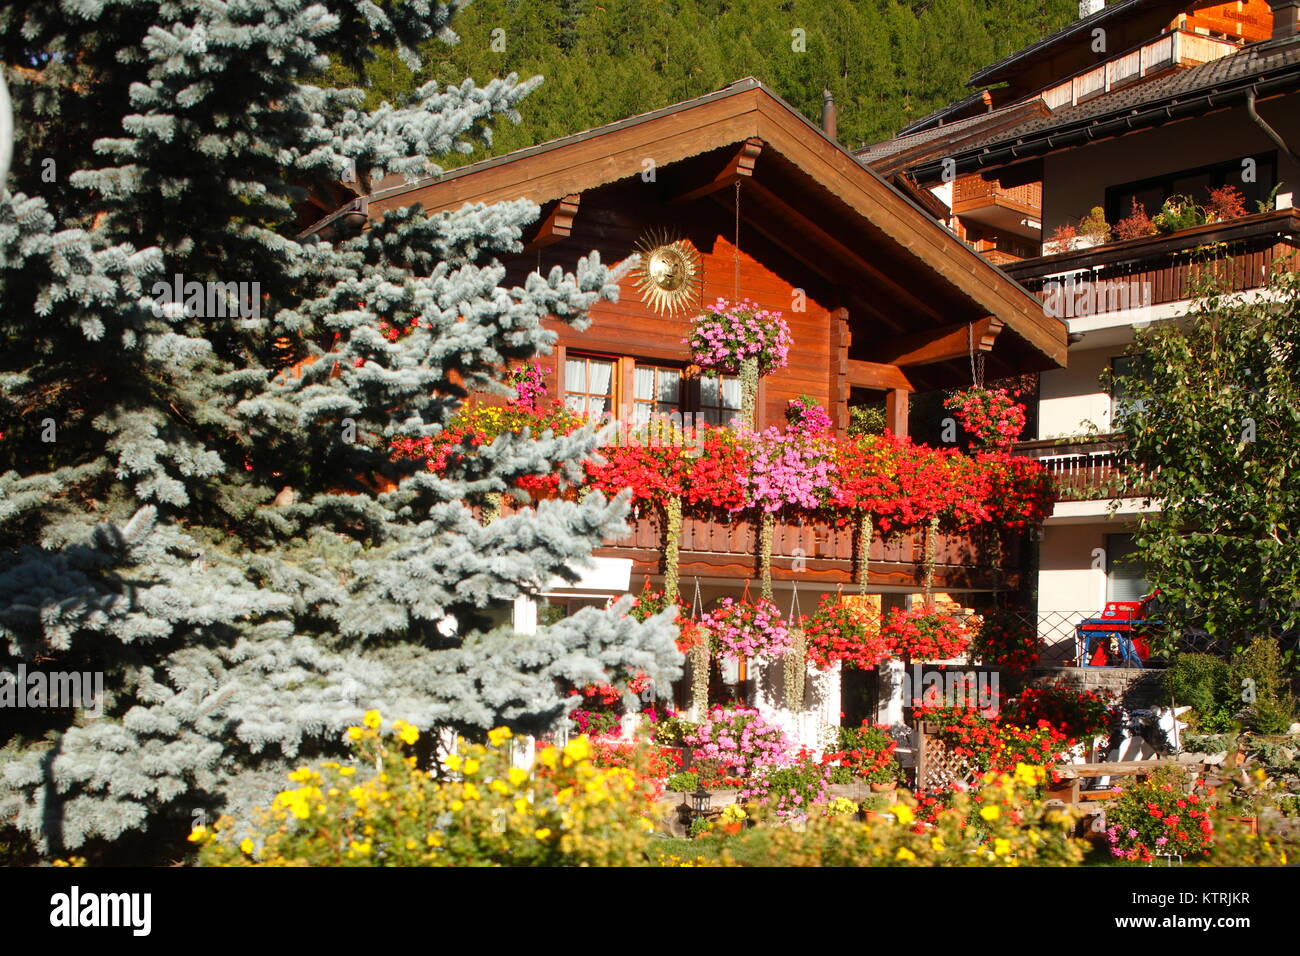 Holzhaus, Blumenkästen, Winkelmatten, Zermatt, Schweiz Ich Holzhaus,  Blumen, Zermatt, Schweiz Stockfotografie - Alamy